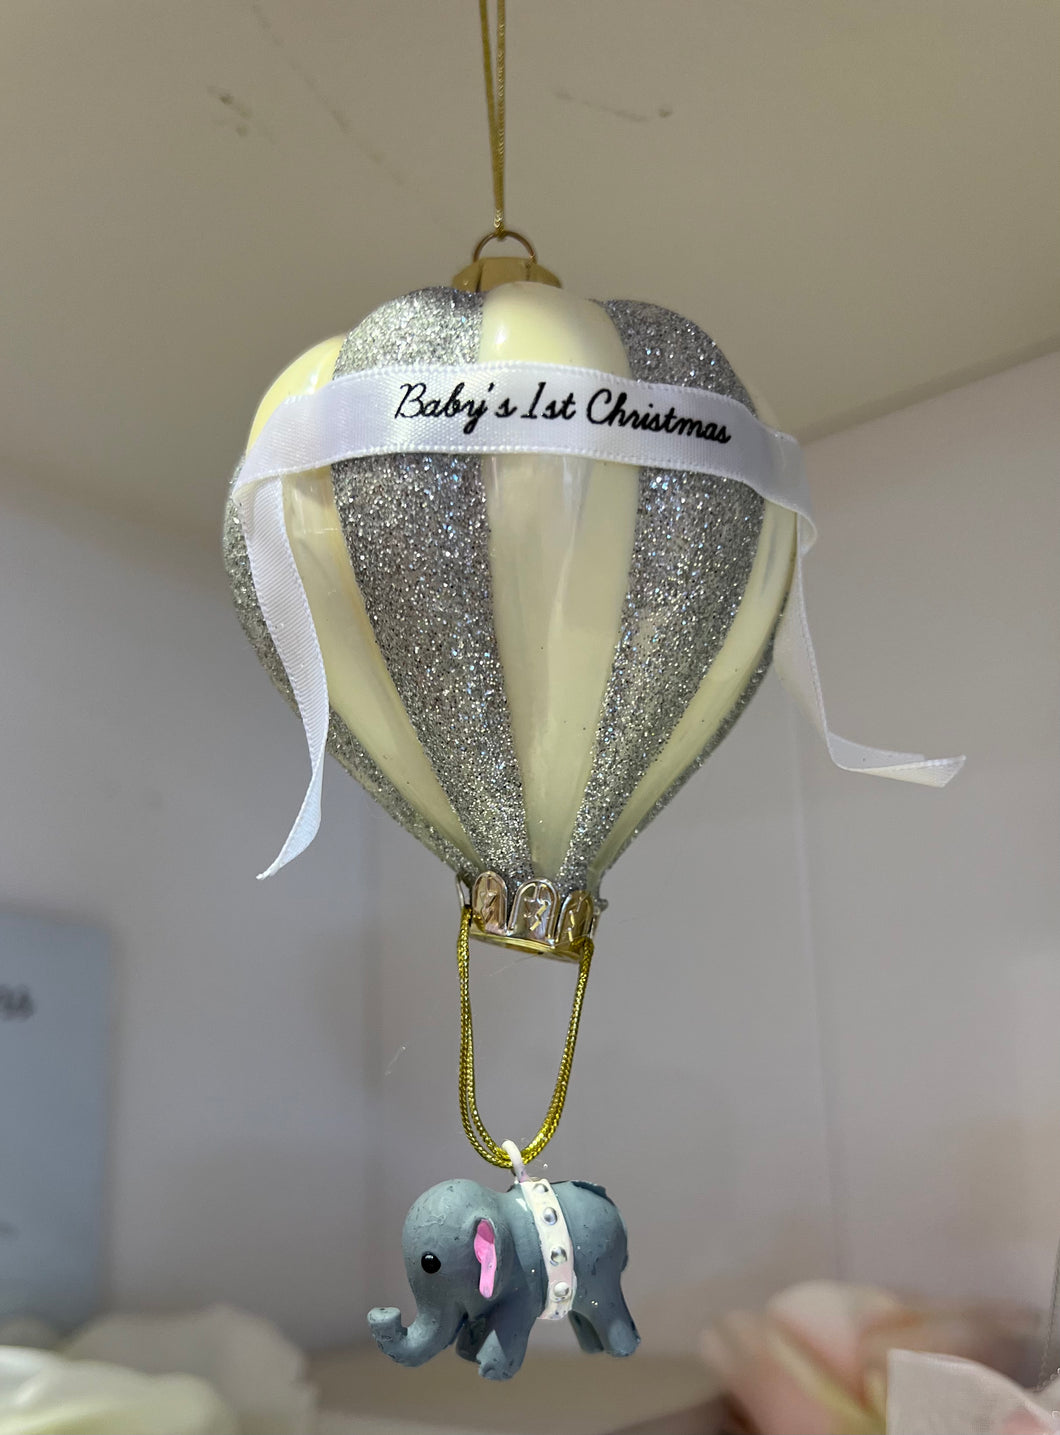 Baby's 1st Christmas Ornament Lemon